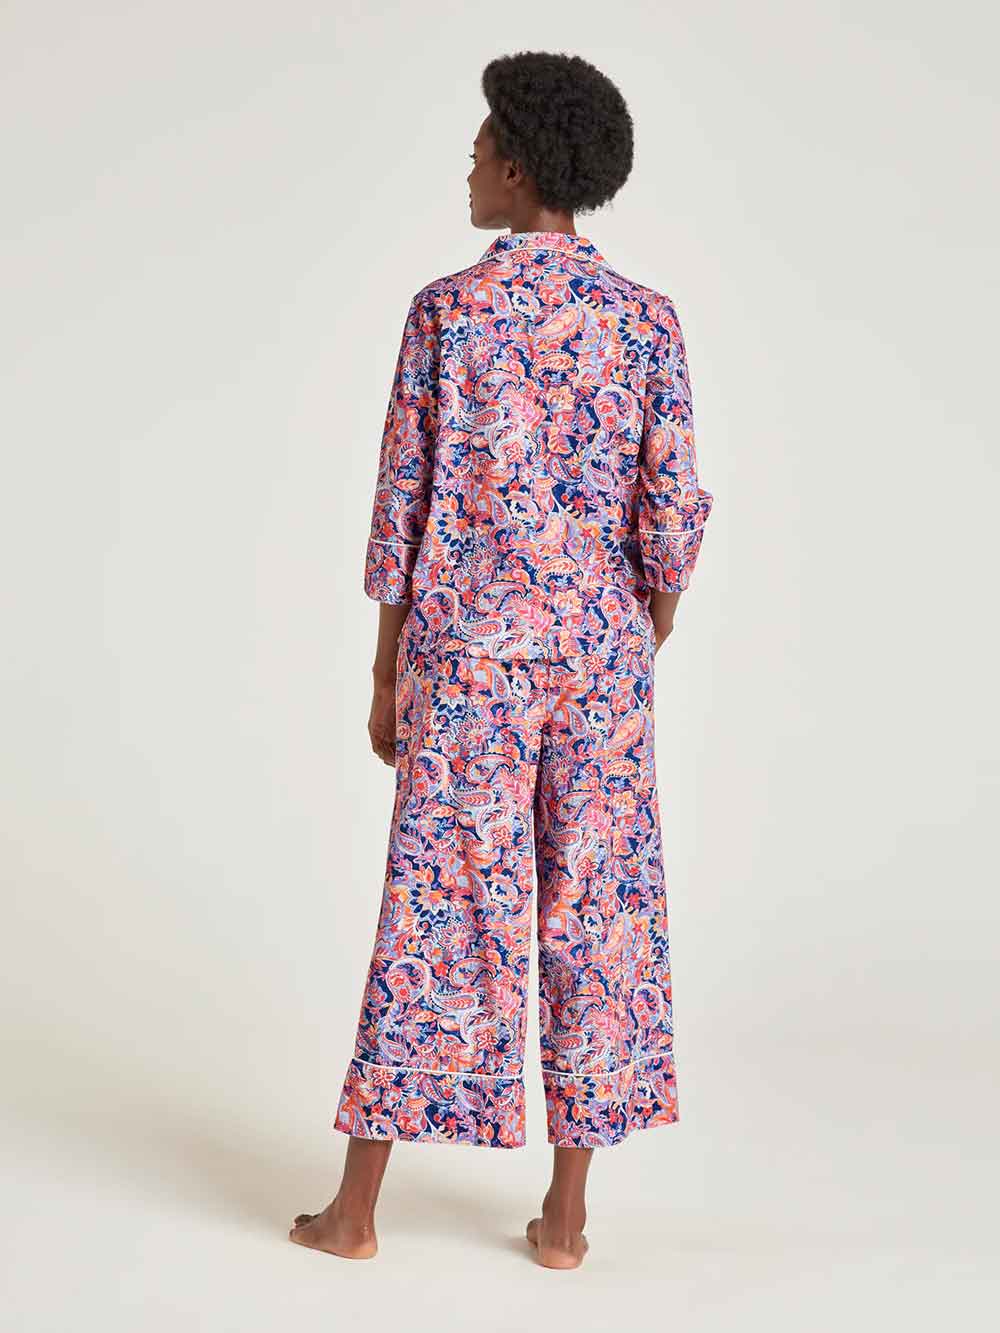 Thought Adina Organic Cotton Pyjama Set In A Bag